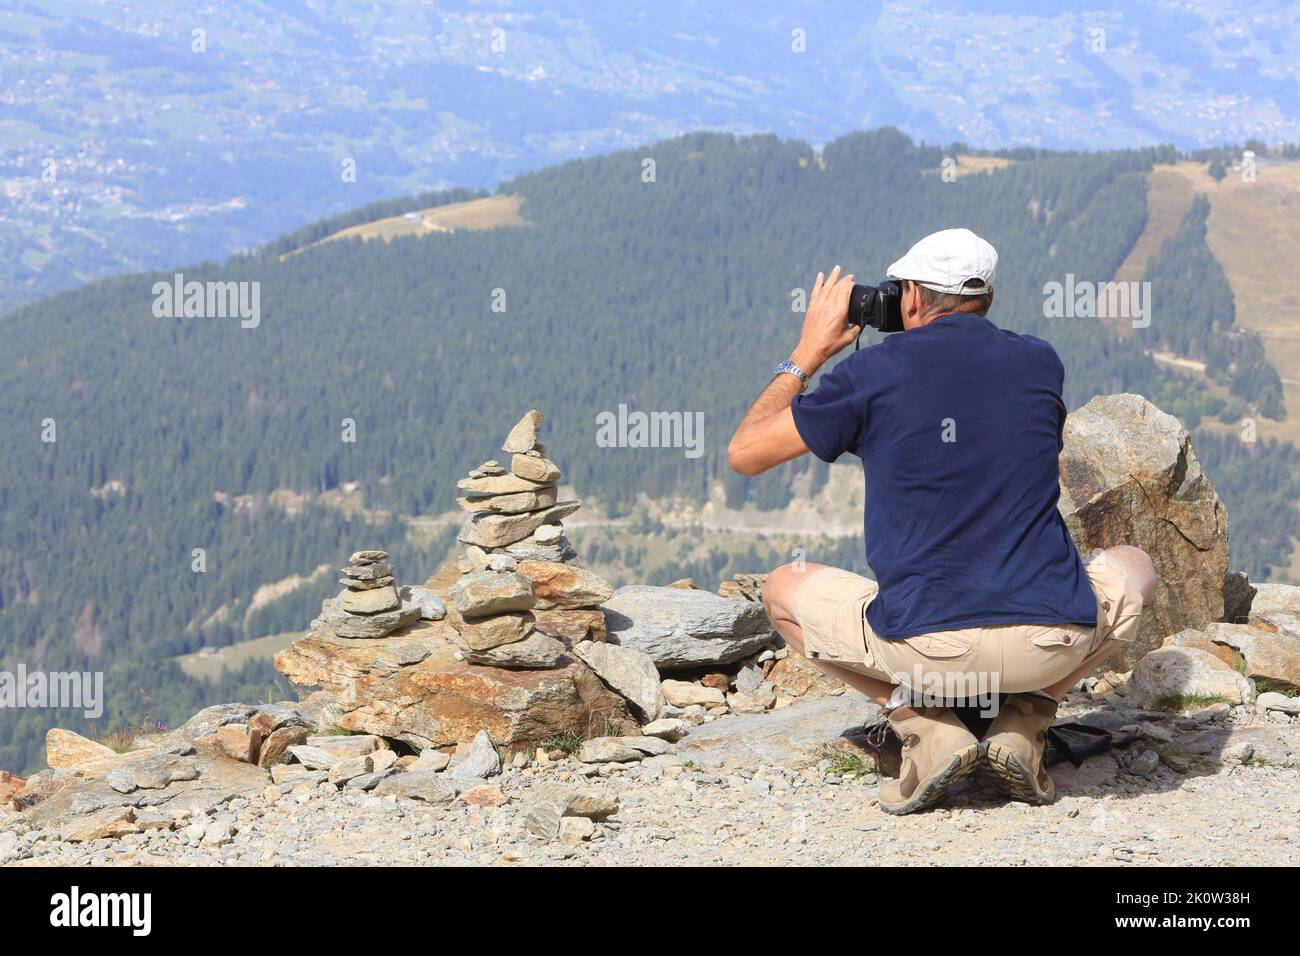 Touristique à proximité d'un cairn, amas de pierres placé pour marquer un lieu particulier, photographe le paysage. Nid d'Aigle. Saint-Gervais-les-Bai Banque D'Images